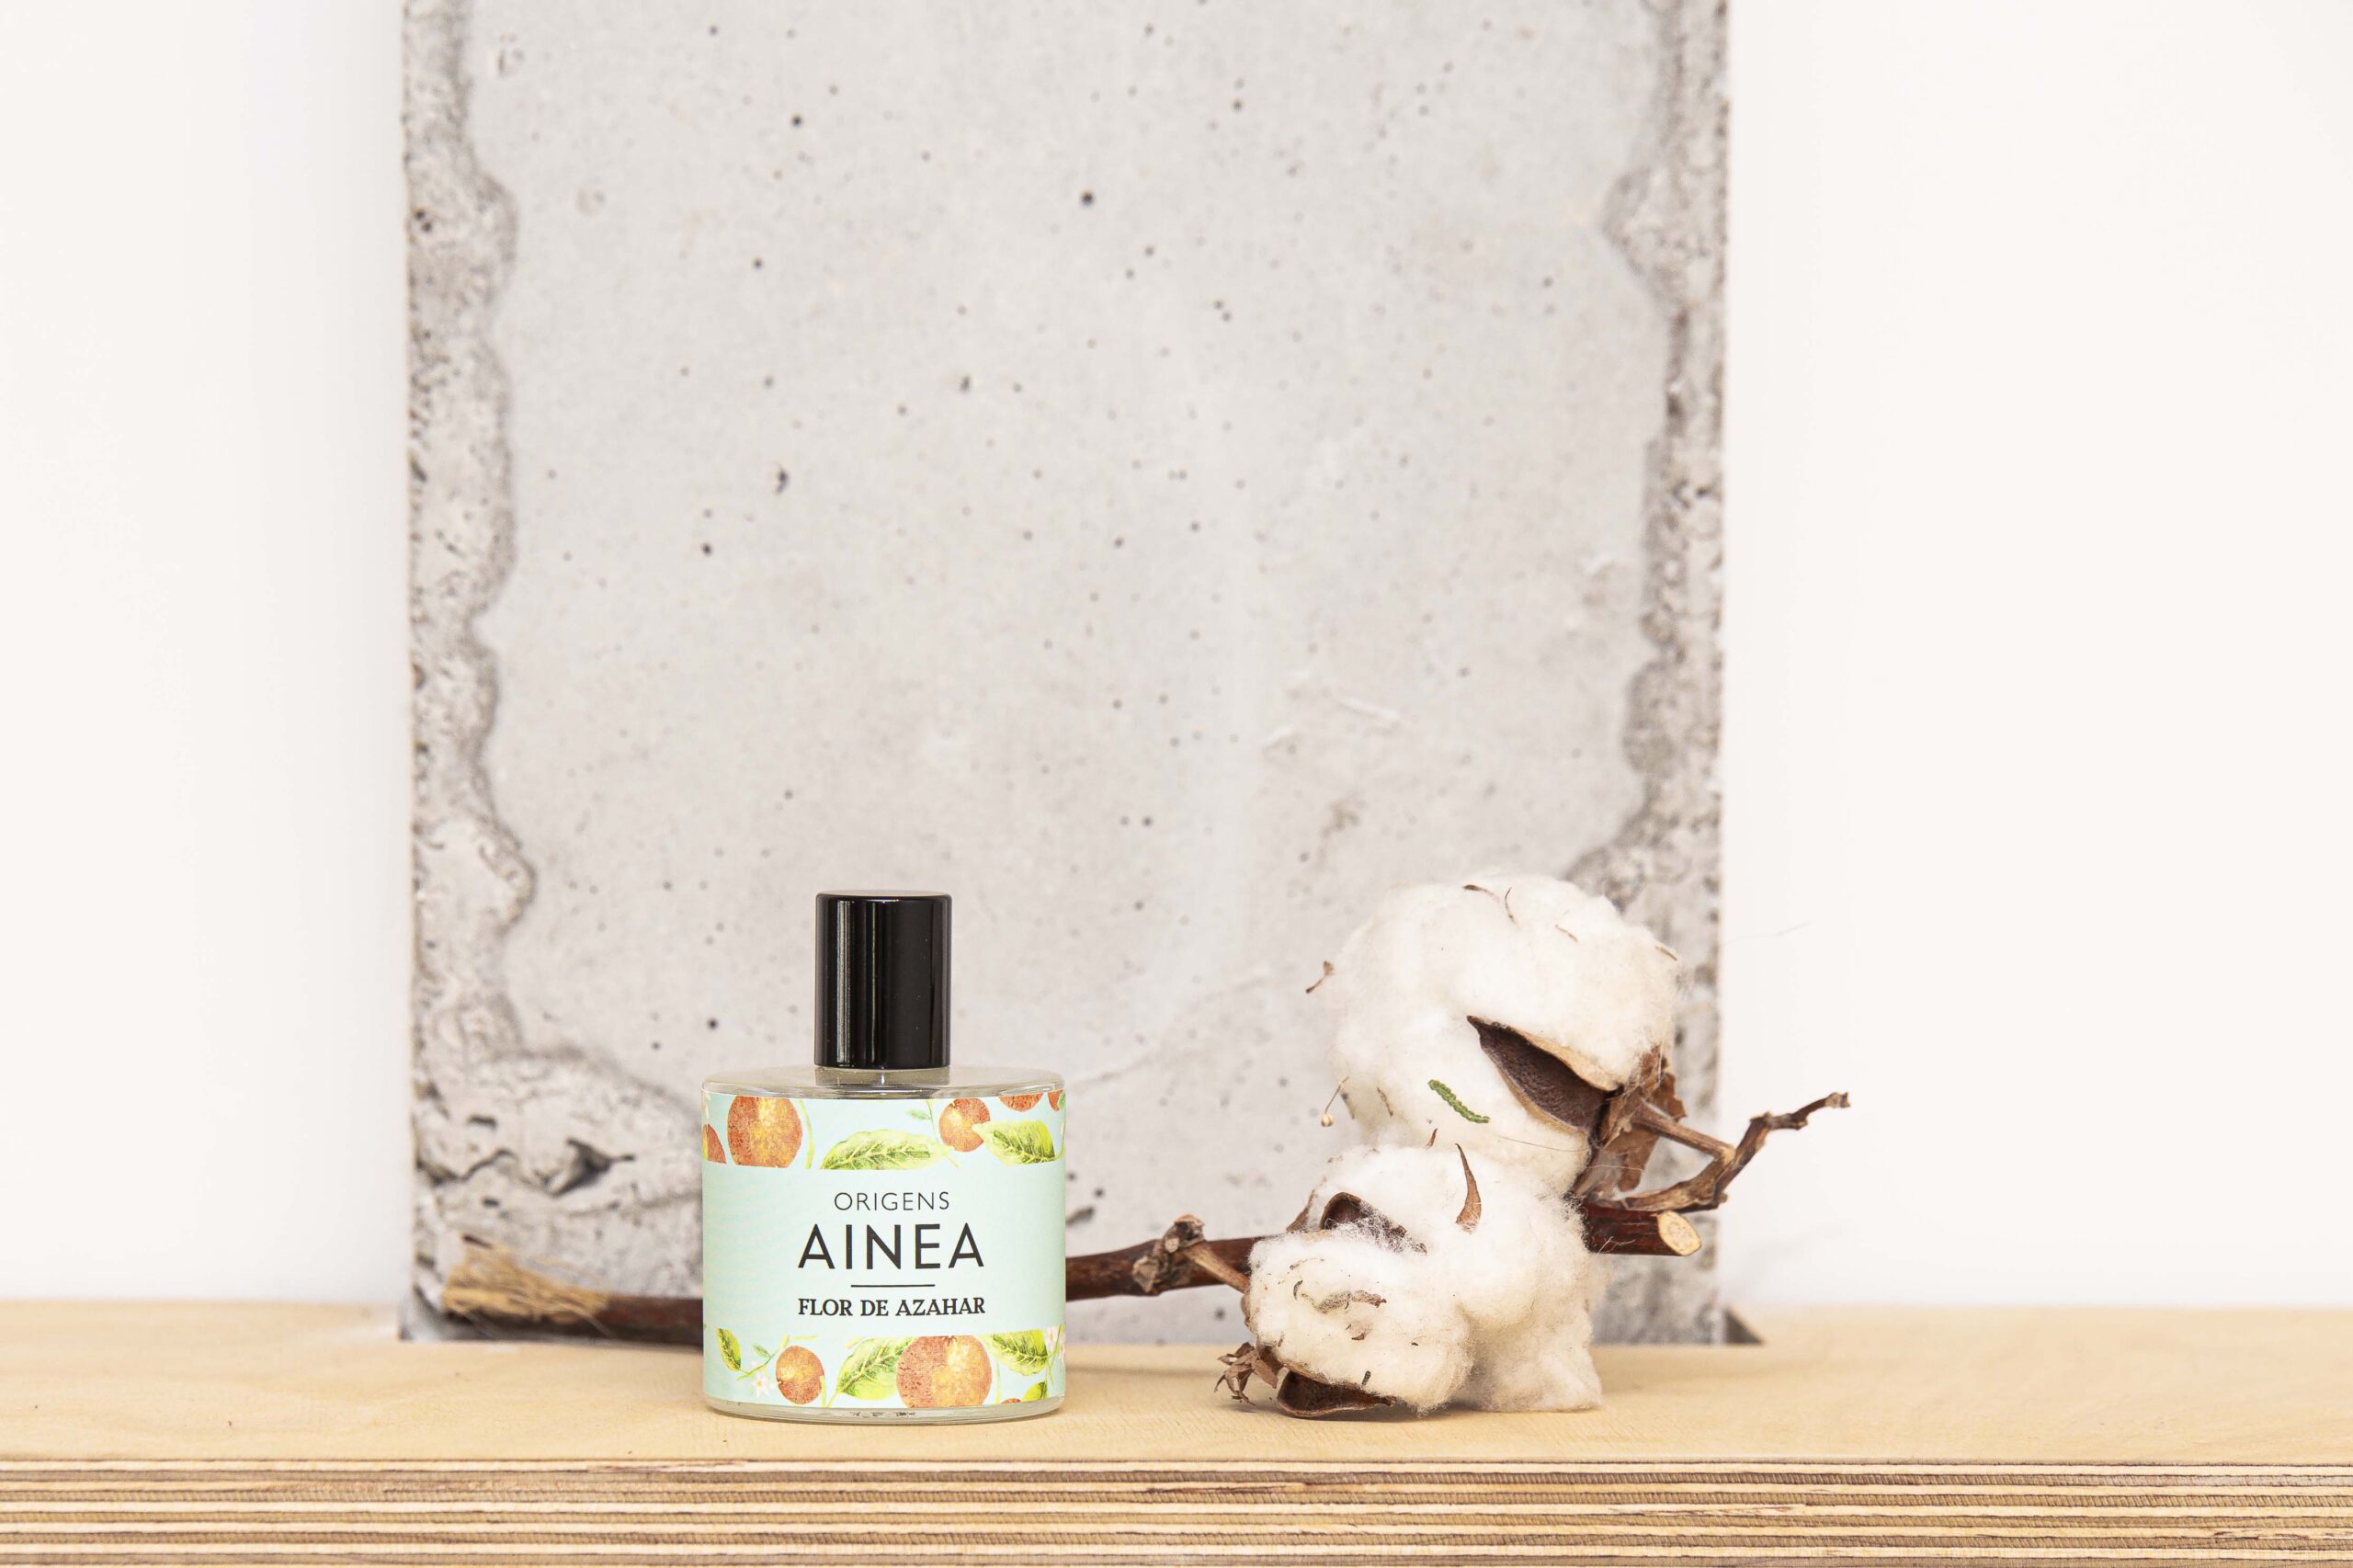 Colonia Flor de Azahar 50 ml de la colección Origens de Ainea Perfums con rama de algodón y pared de cemento de fondo.